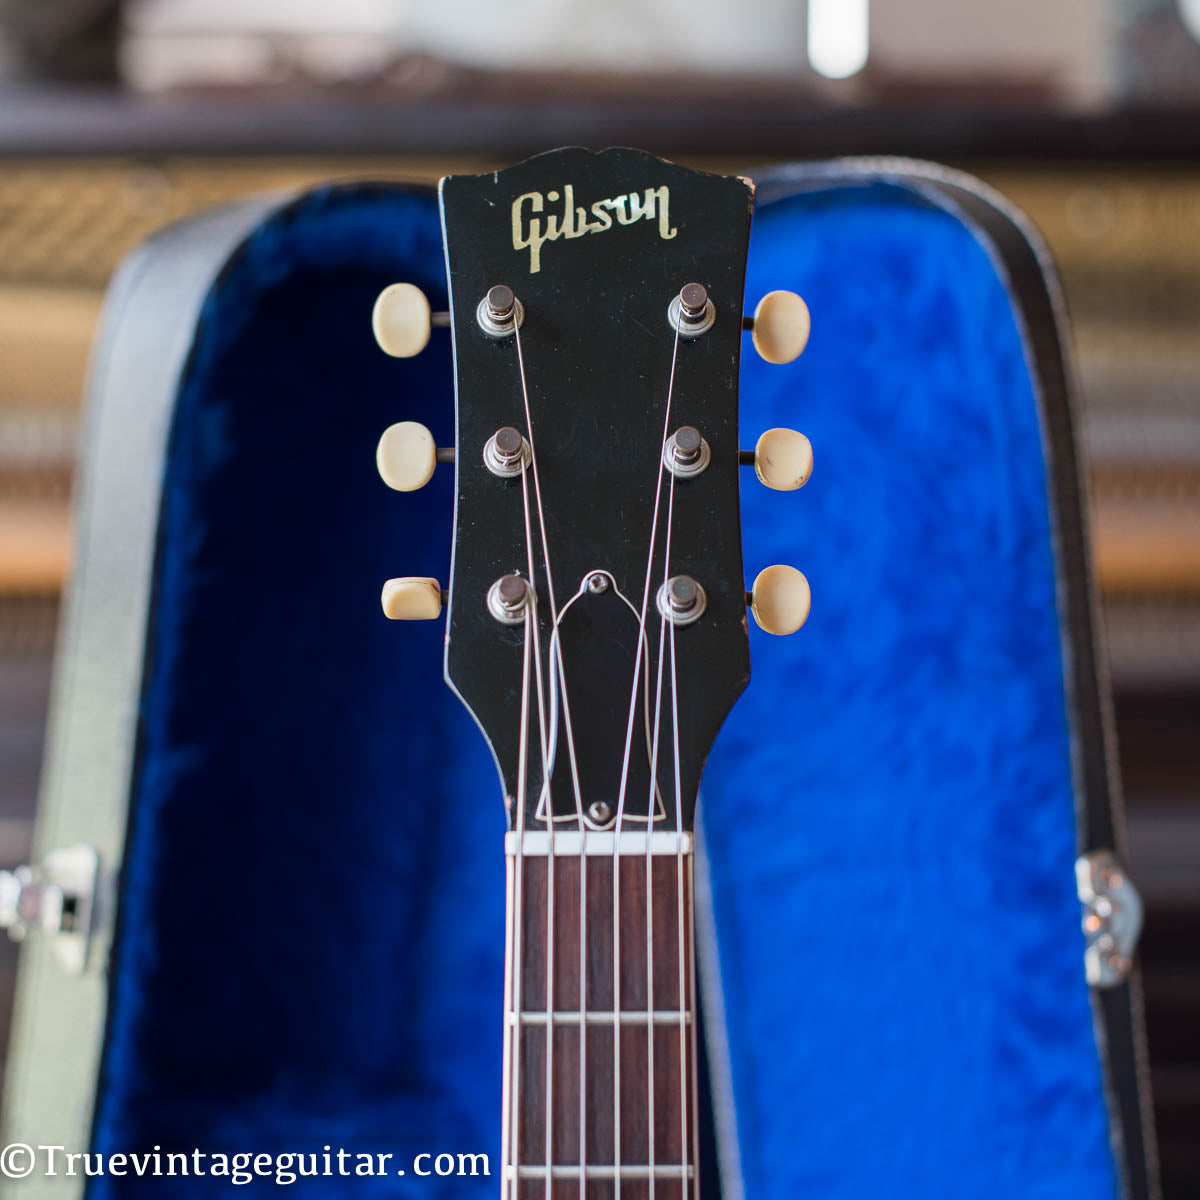 Gibson headstock, 1965 Gibson SG Special guitar